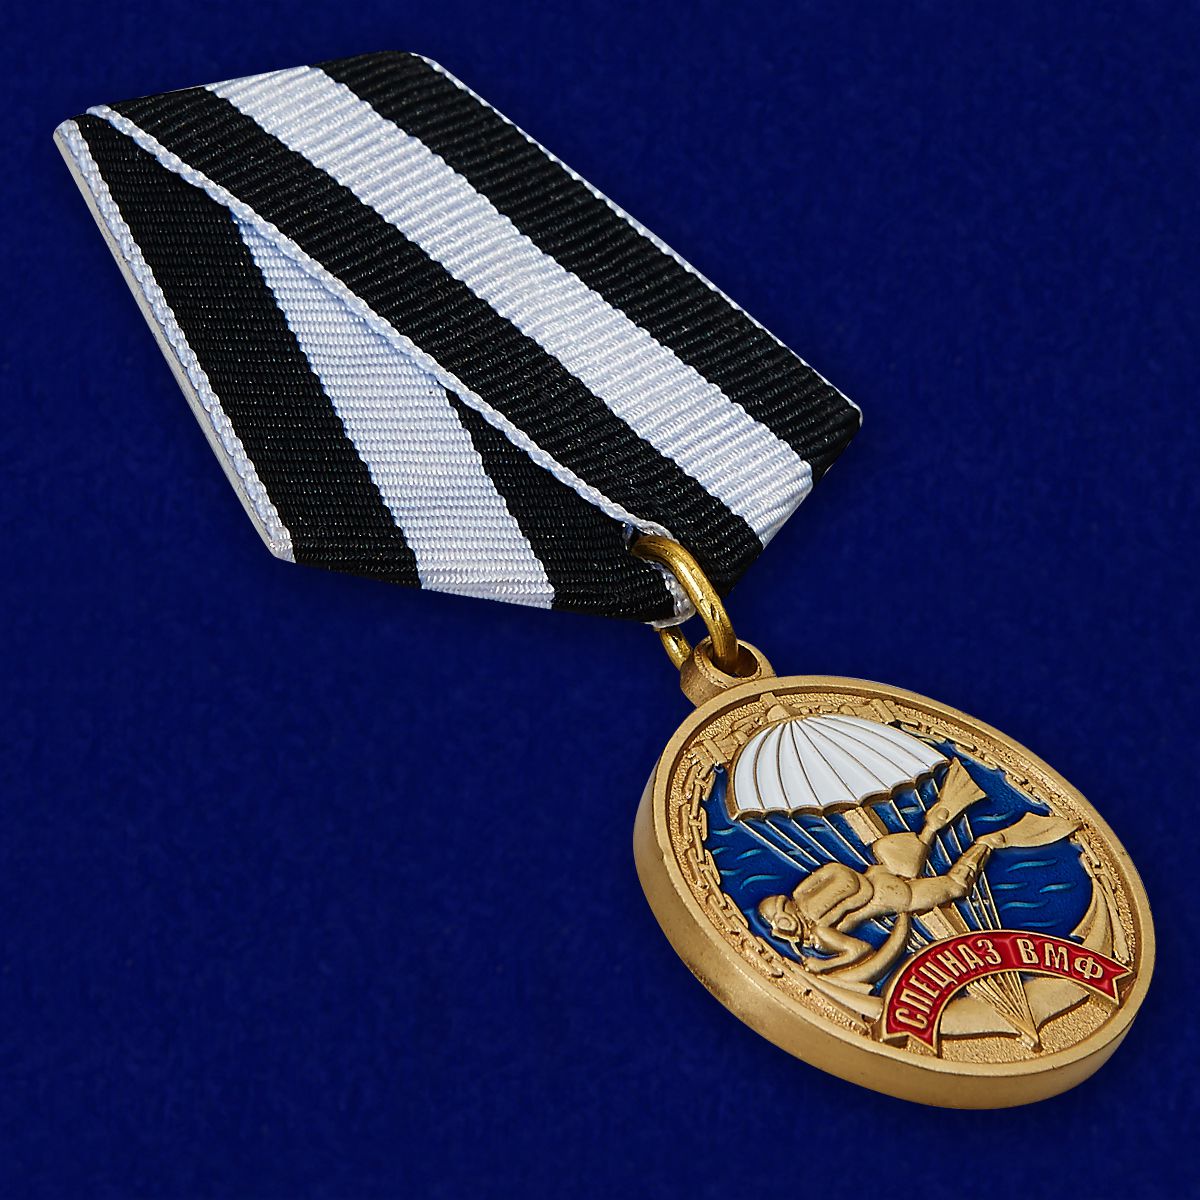 Медаль "Ветеран" Спецназа ВМФ 